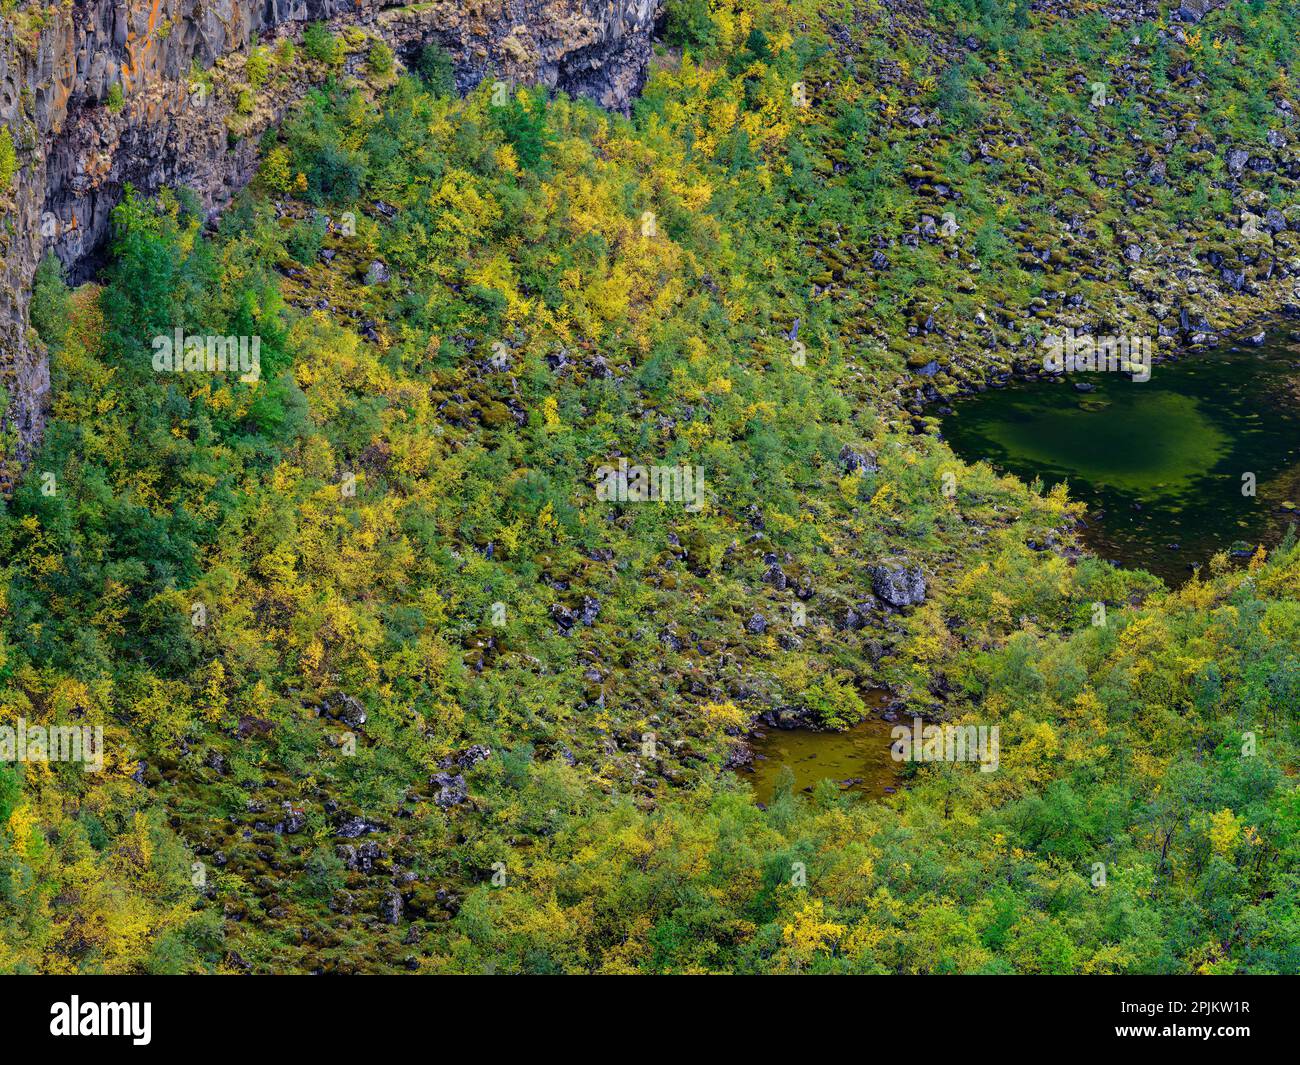 Canyon d'Asbyrgi dans le parc national de Vatnajokull. La guerre du canyon formée par la rivière glaciaire Jokulsa a Fjollum, avant que la rivière change de cours, l'Islande Banque D'Images